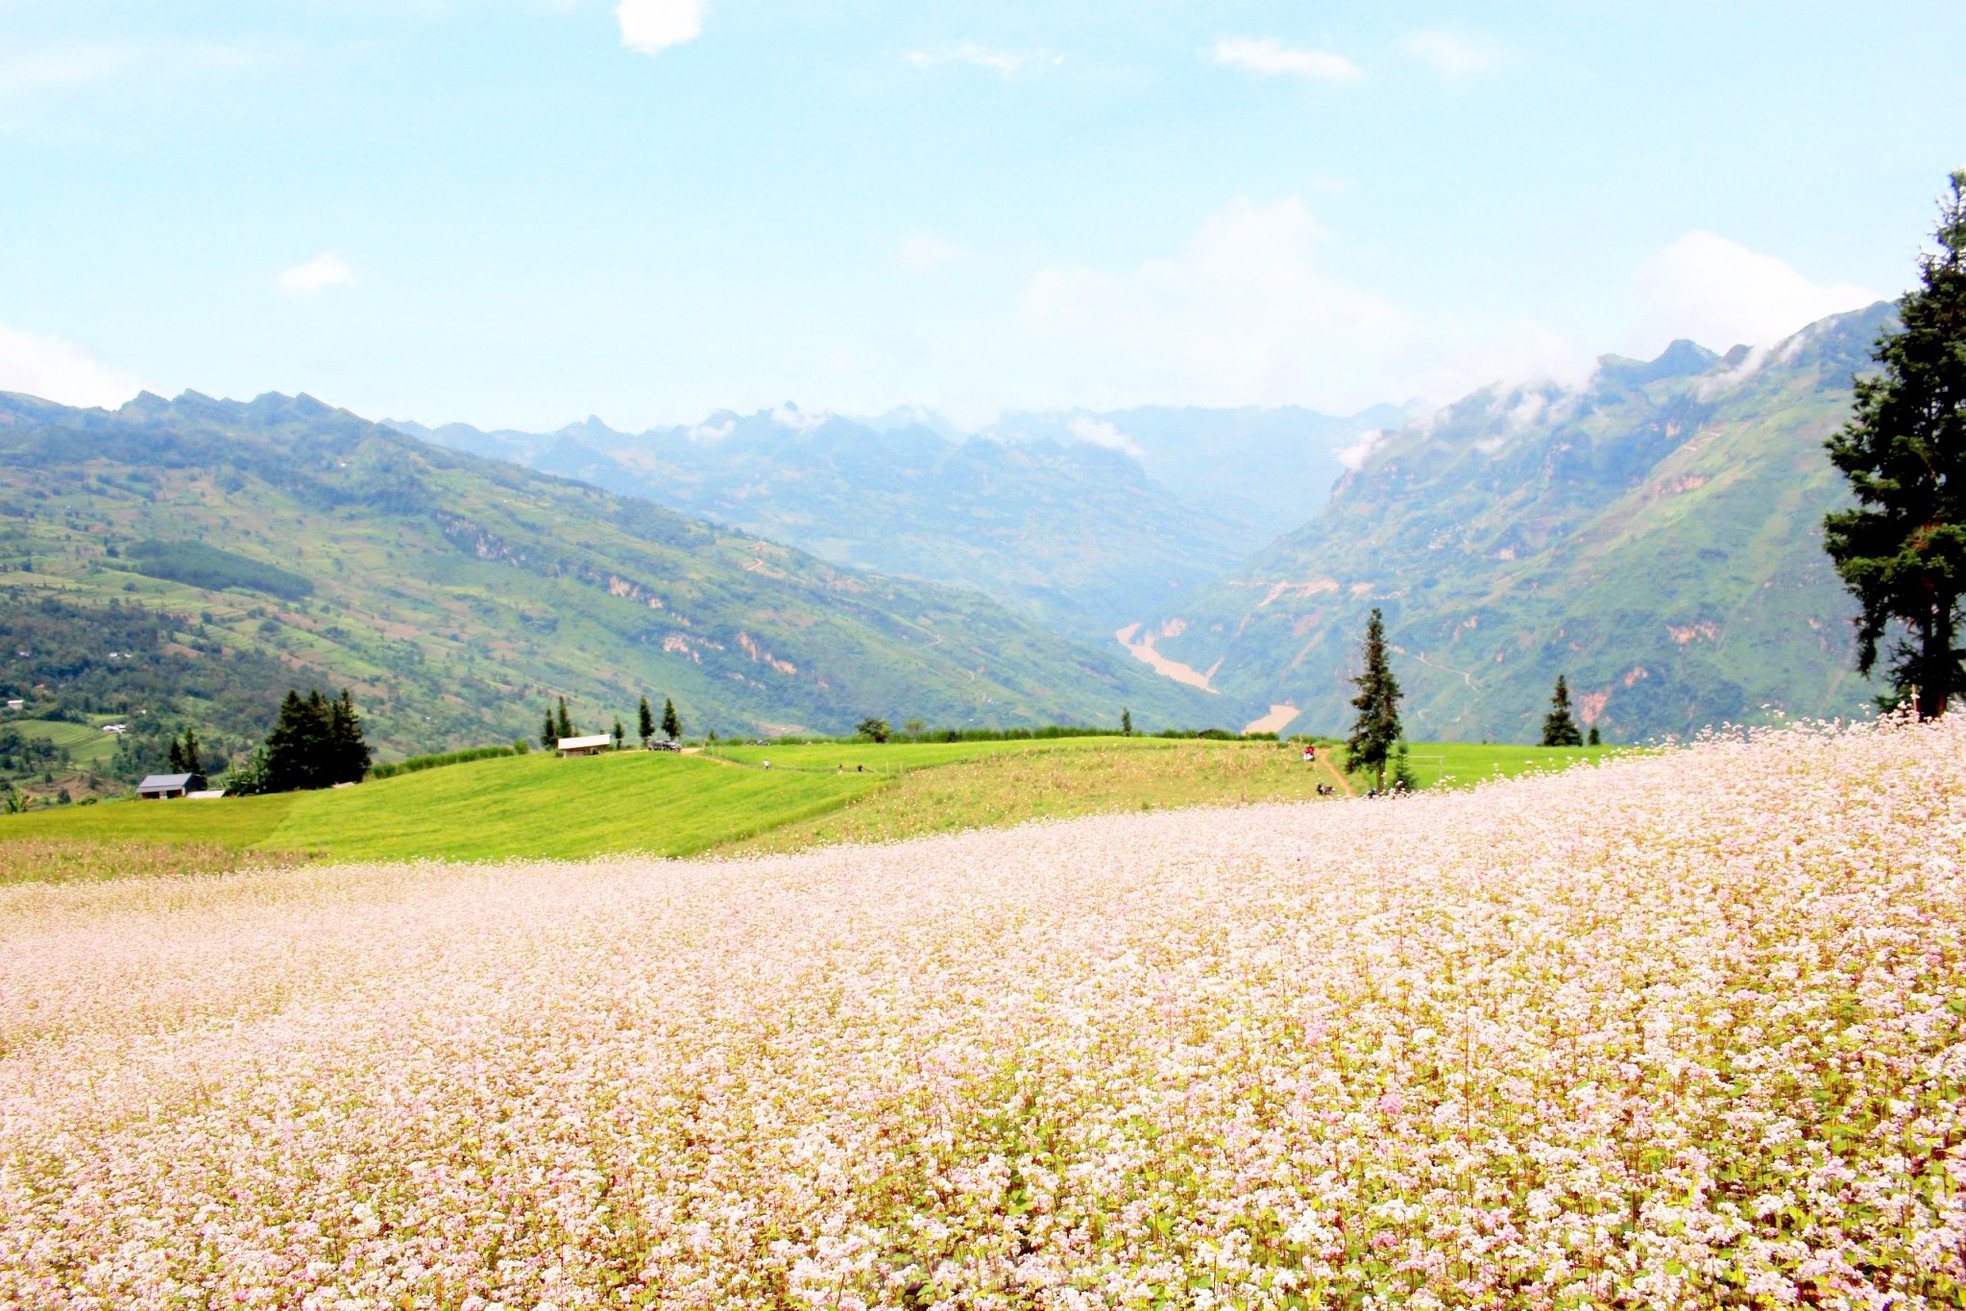 Hoa tam giác mạch phủ hồng 'thảo nguyên Thụy Sĩ giữa lòng Hà Giang' - Ảnh 4.